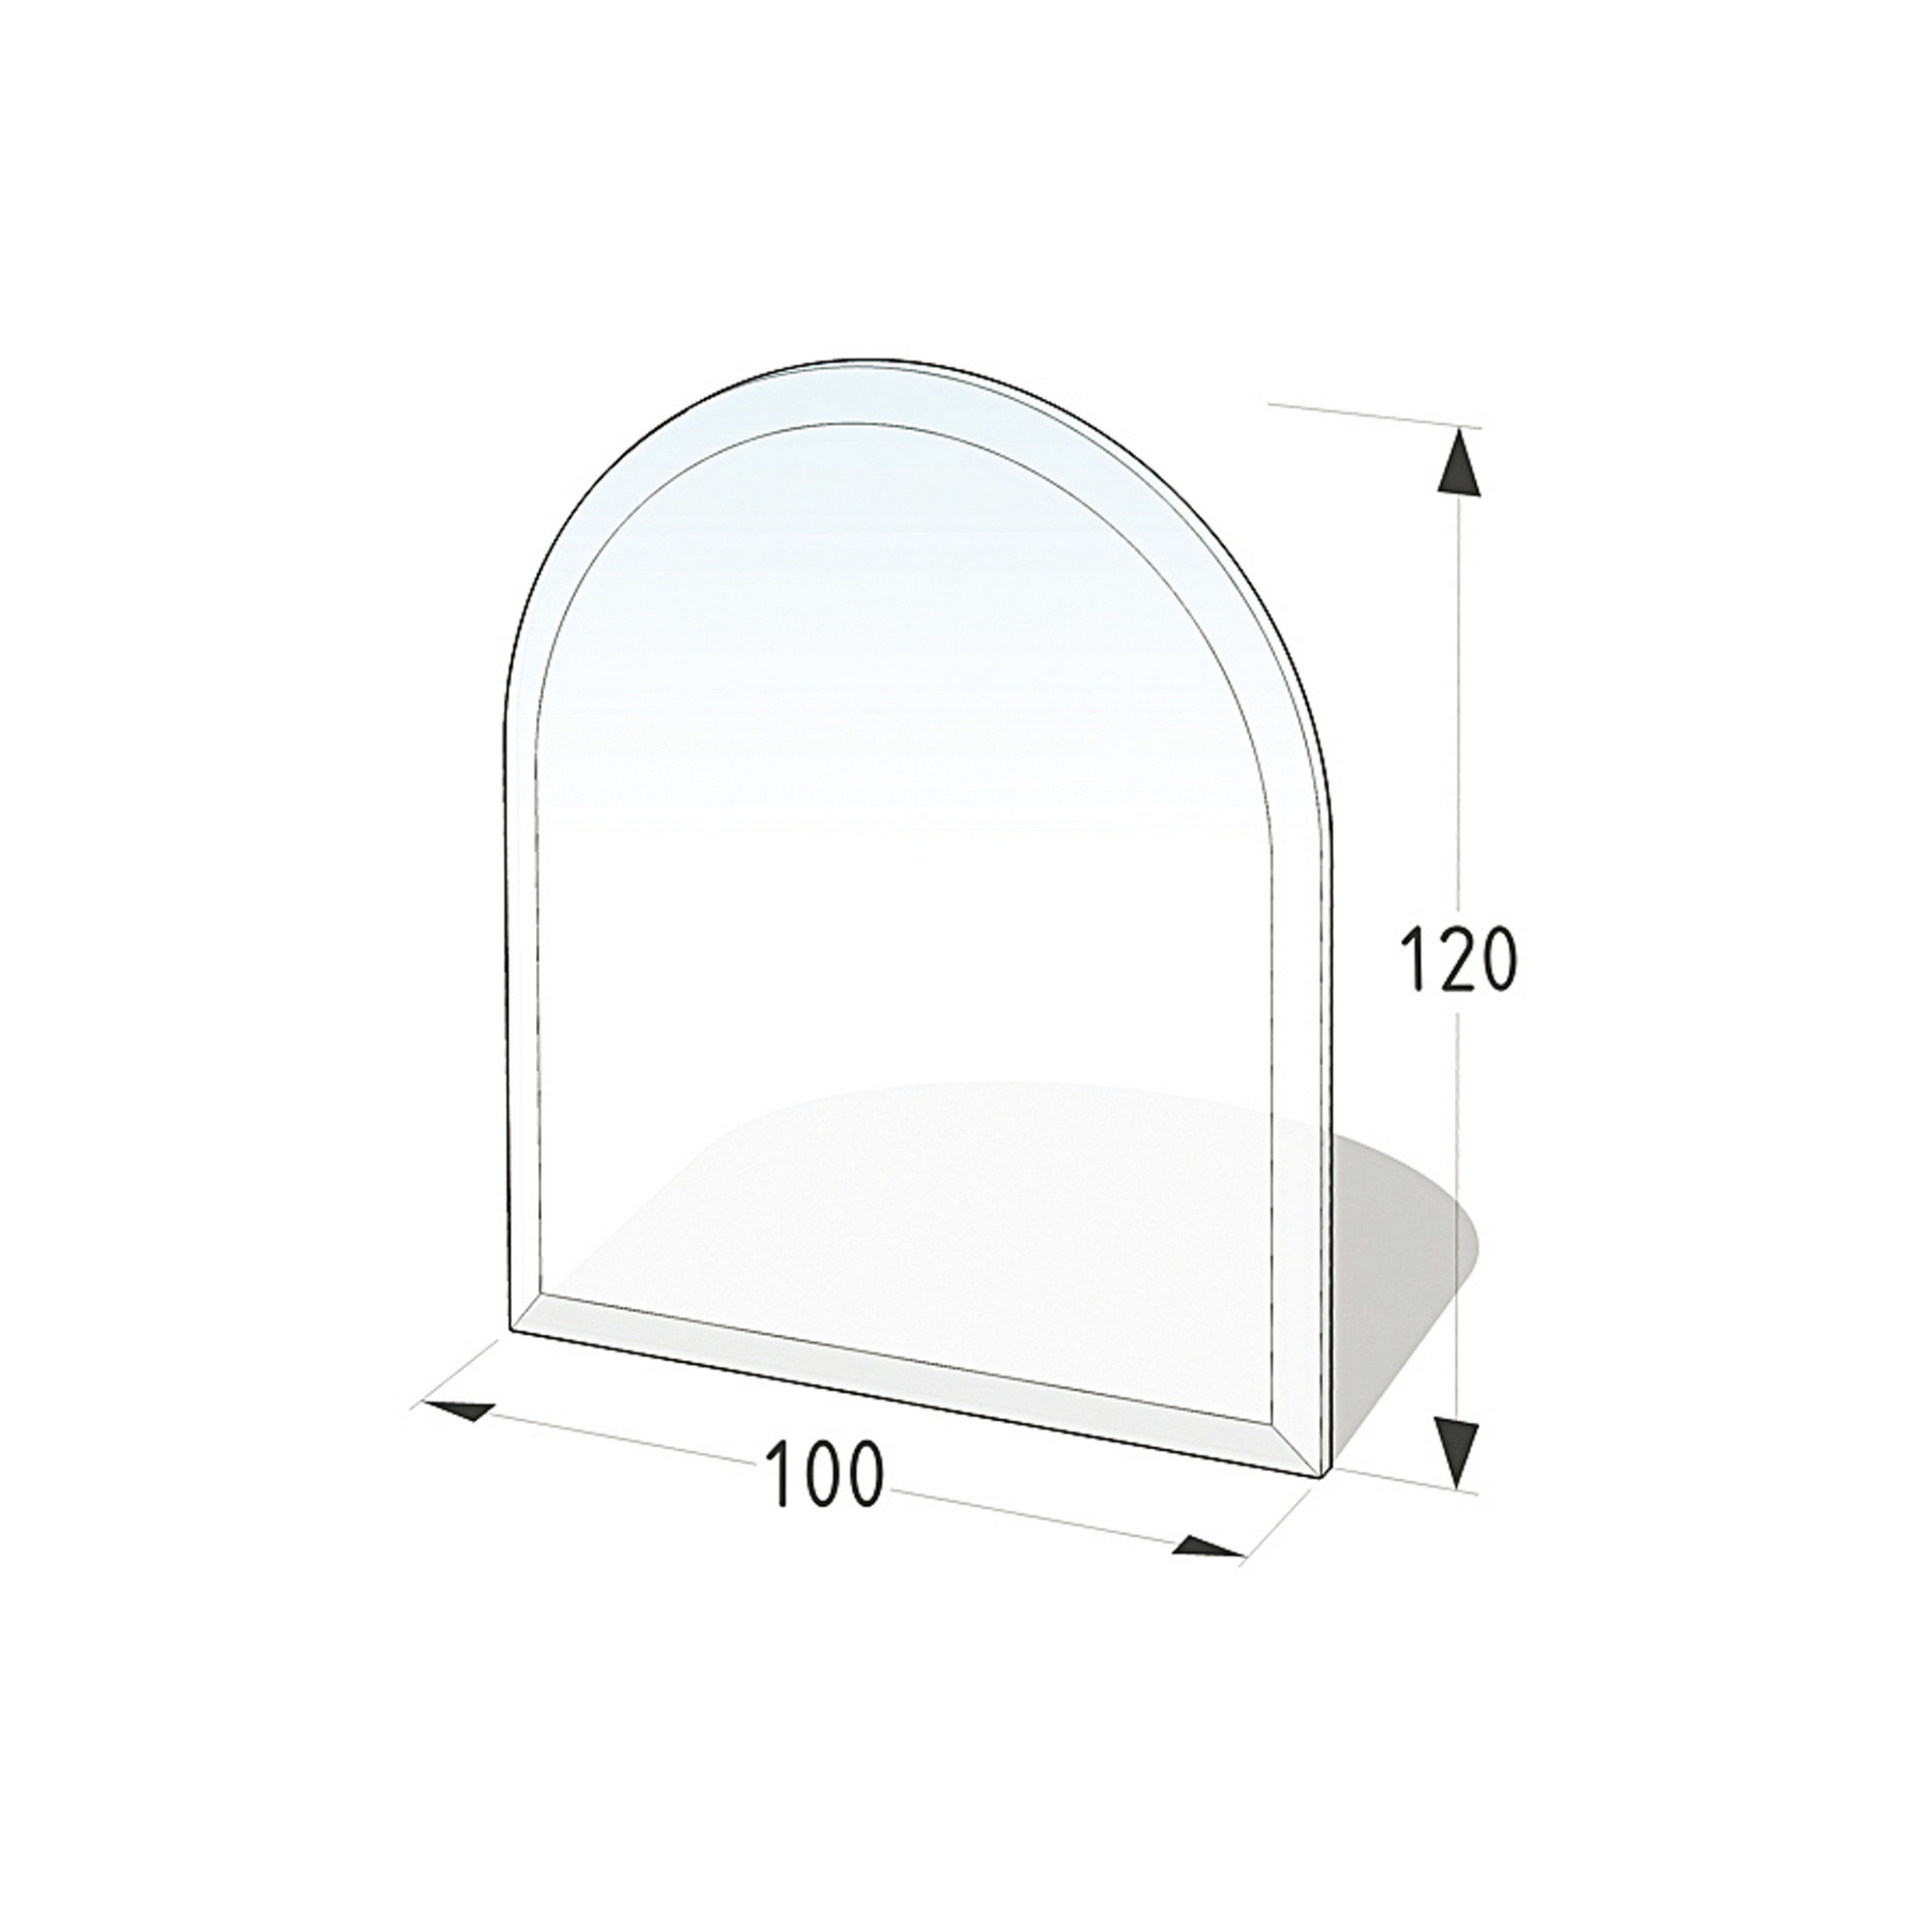 Funkenschutzplatte D-Form 100 x 120 x 0,8 cm ESG grau + product picture